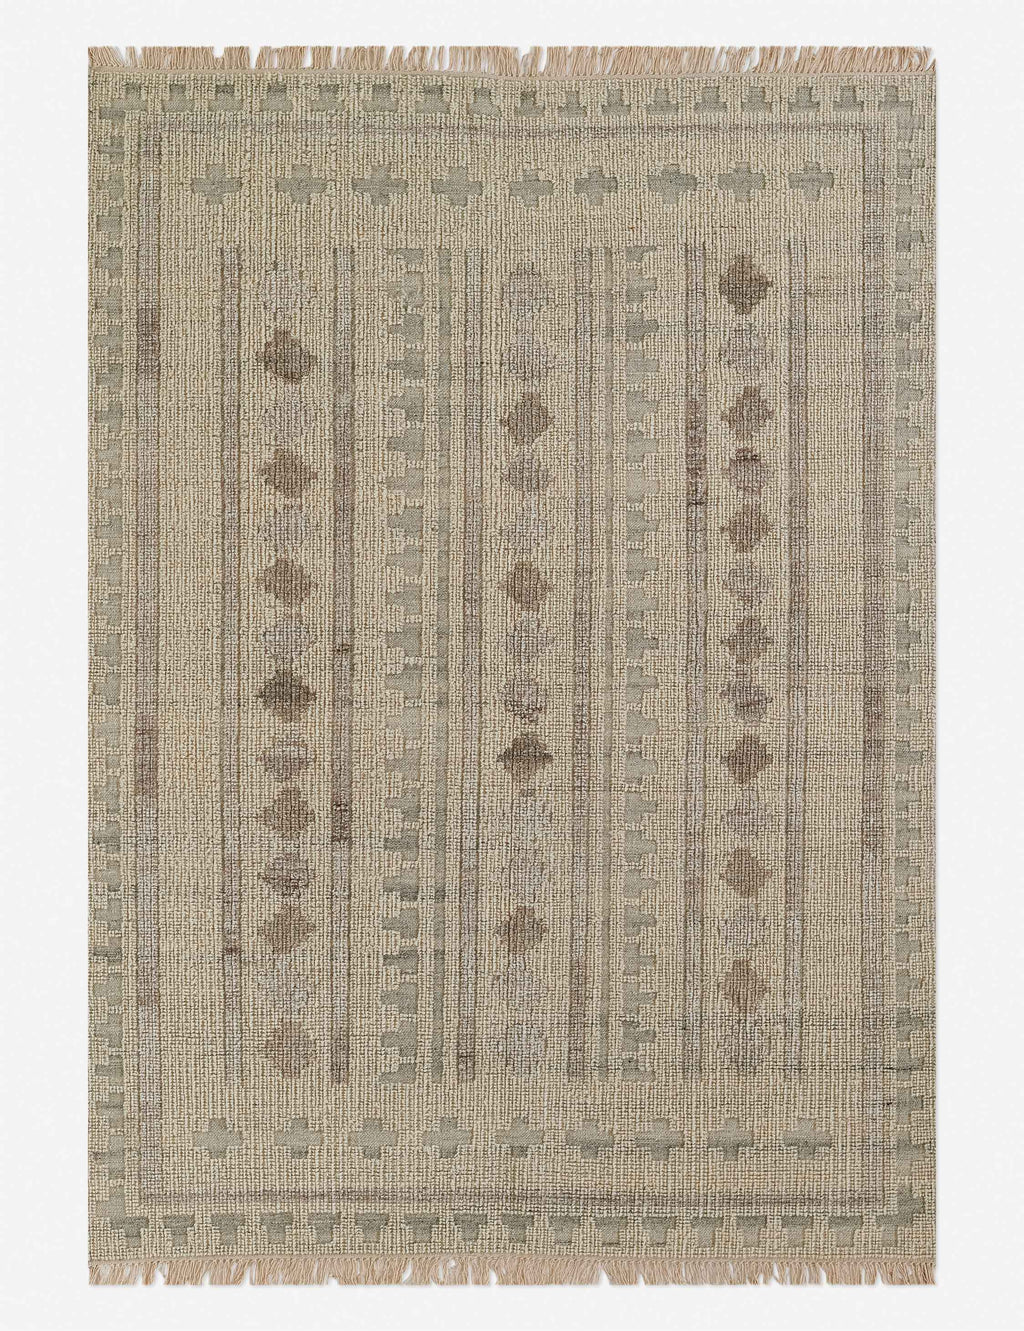 KALYAN handwoven wool rug runners 76 cm x 244 cm